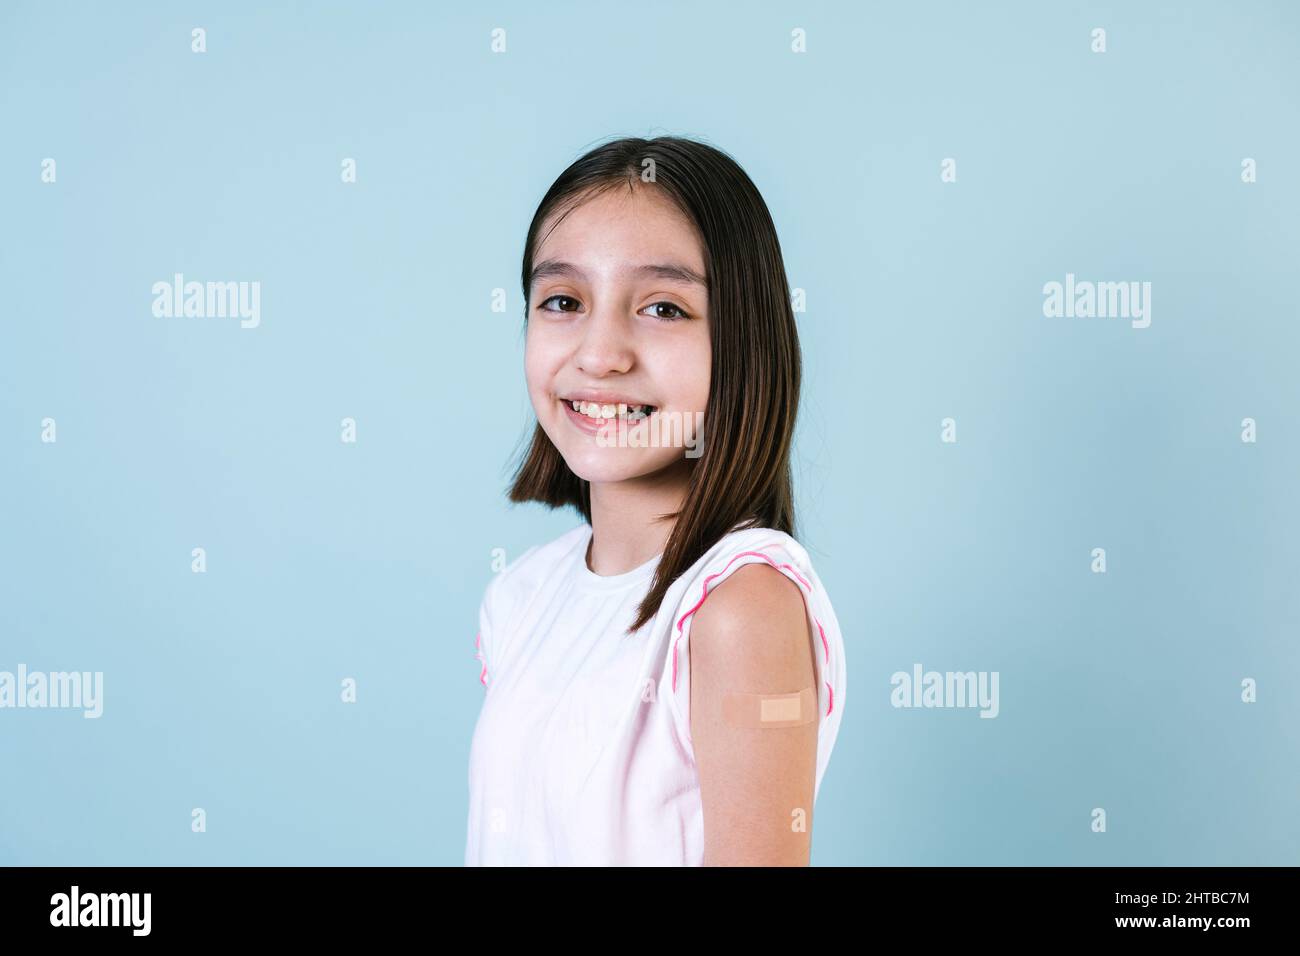 Hispanische Mädchen Kinderportrait, nachdem sie einen Impfschutz erhalten hatte und ihren Arm mit einem Verband gezeigt hatte, der in Mexiko La eine Impfung erhielt, auf blauem Hintergrund Stockfoto